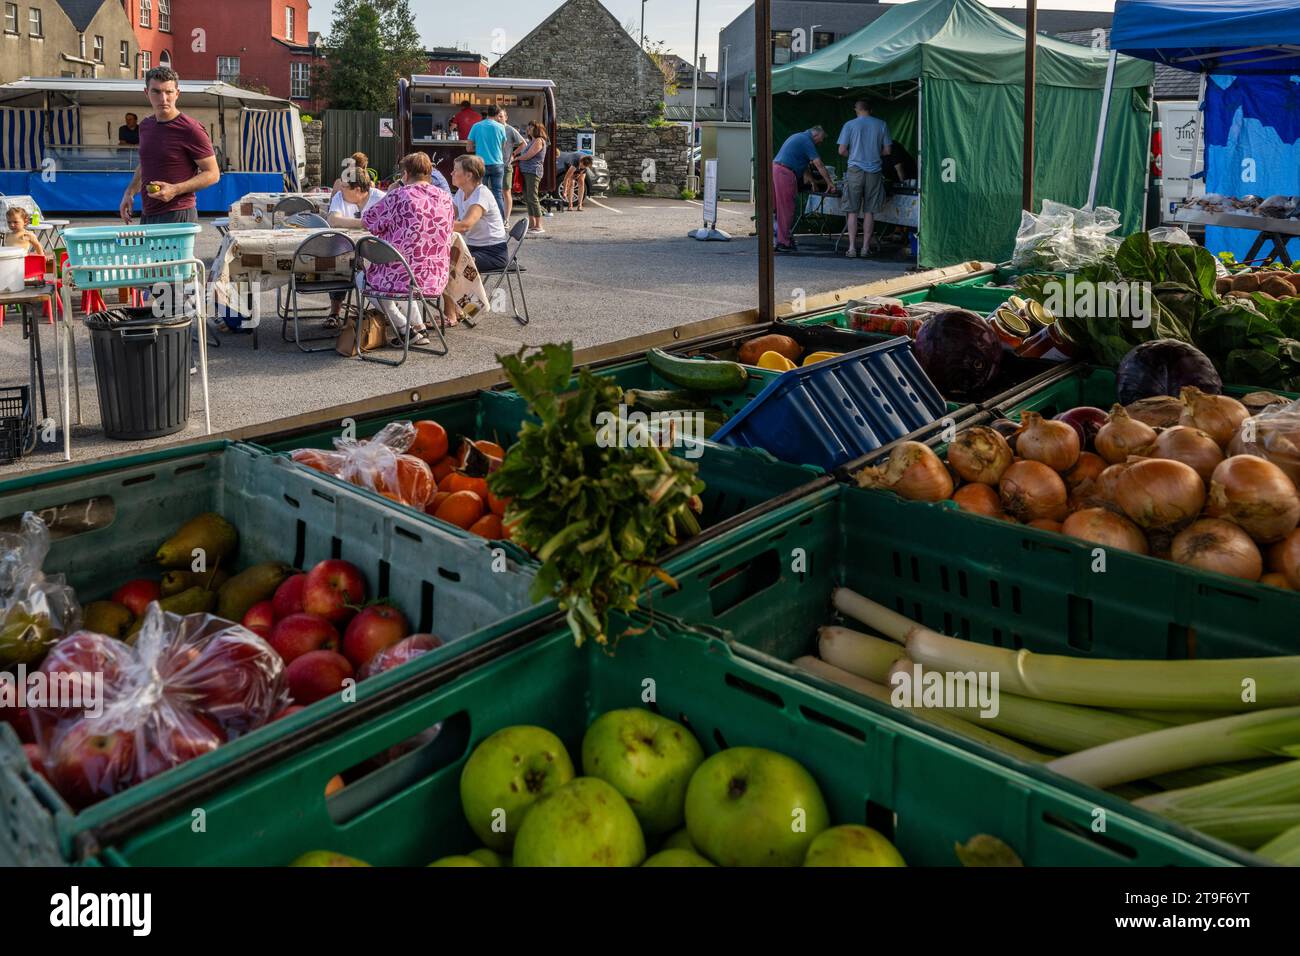 Bancarelle di frutta e verdura in un mercato di campagna, Bandon, West Cork, Irlanda. Foto Stock